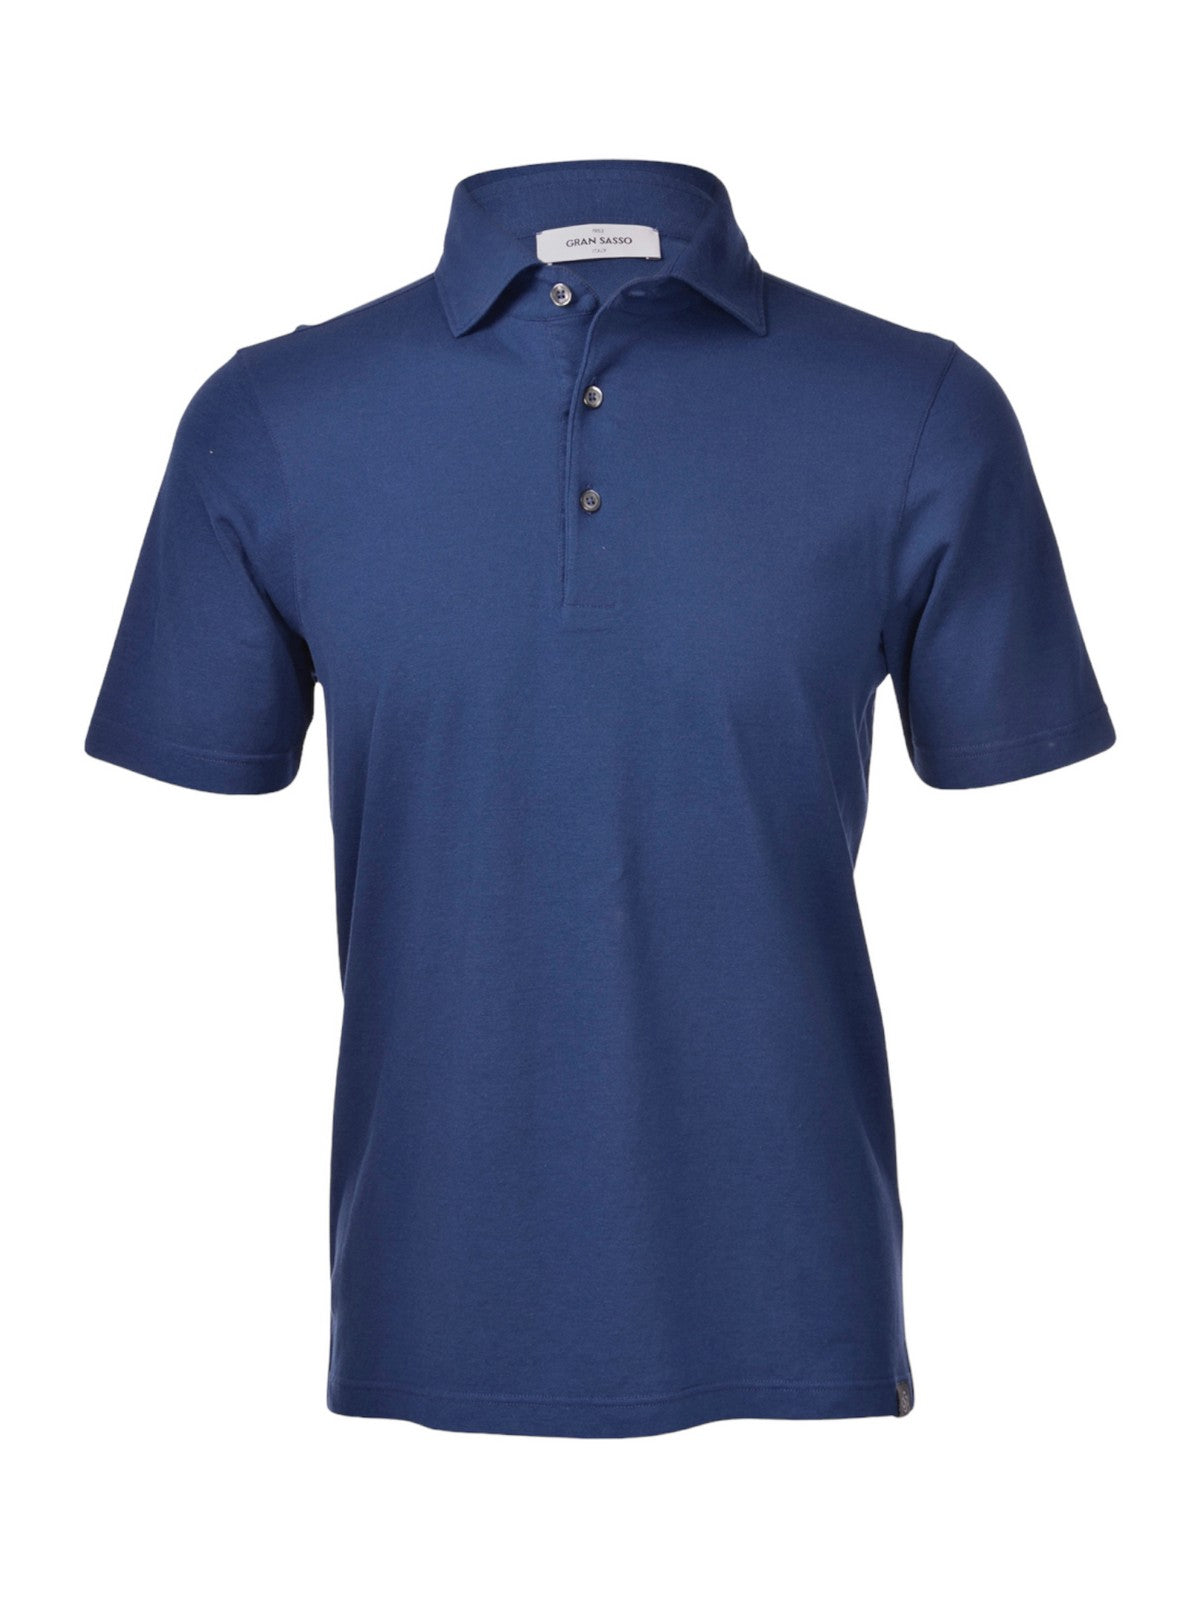 GRAN SASSO T-Shirt e Polo Uomo  60103/81401 590 Blu